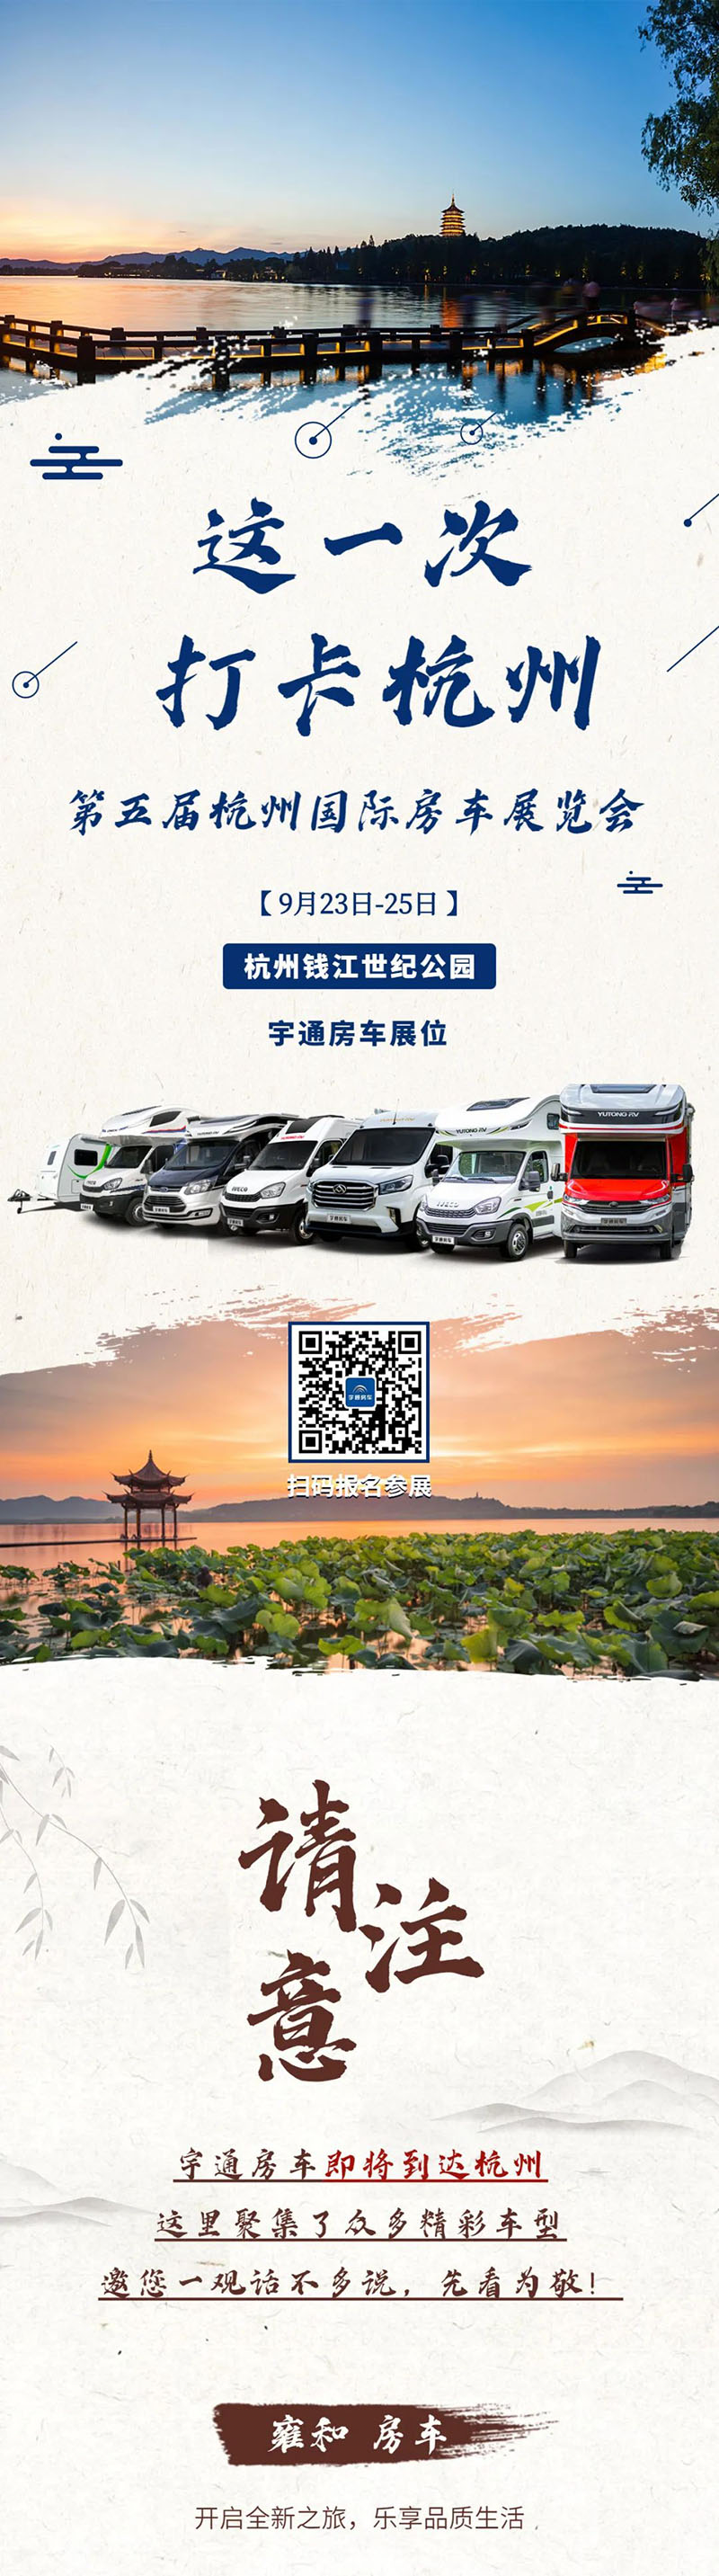 第五届杭州国际房车展览会开始啦——宇通房车即将到达